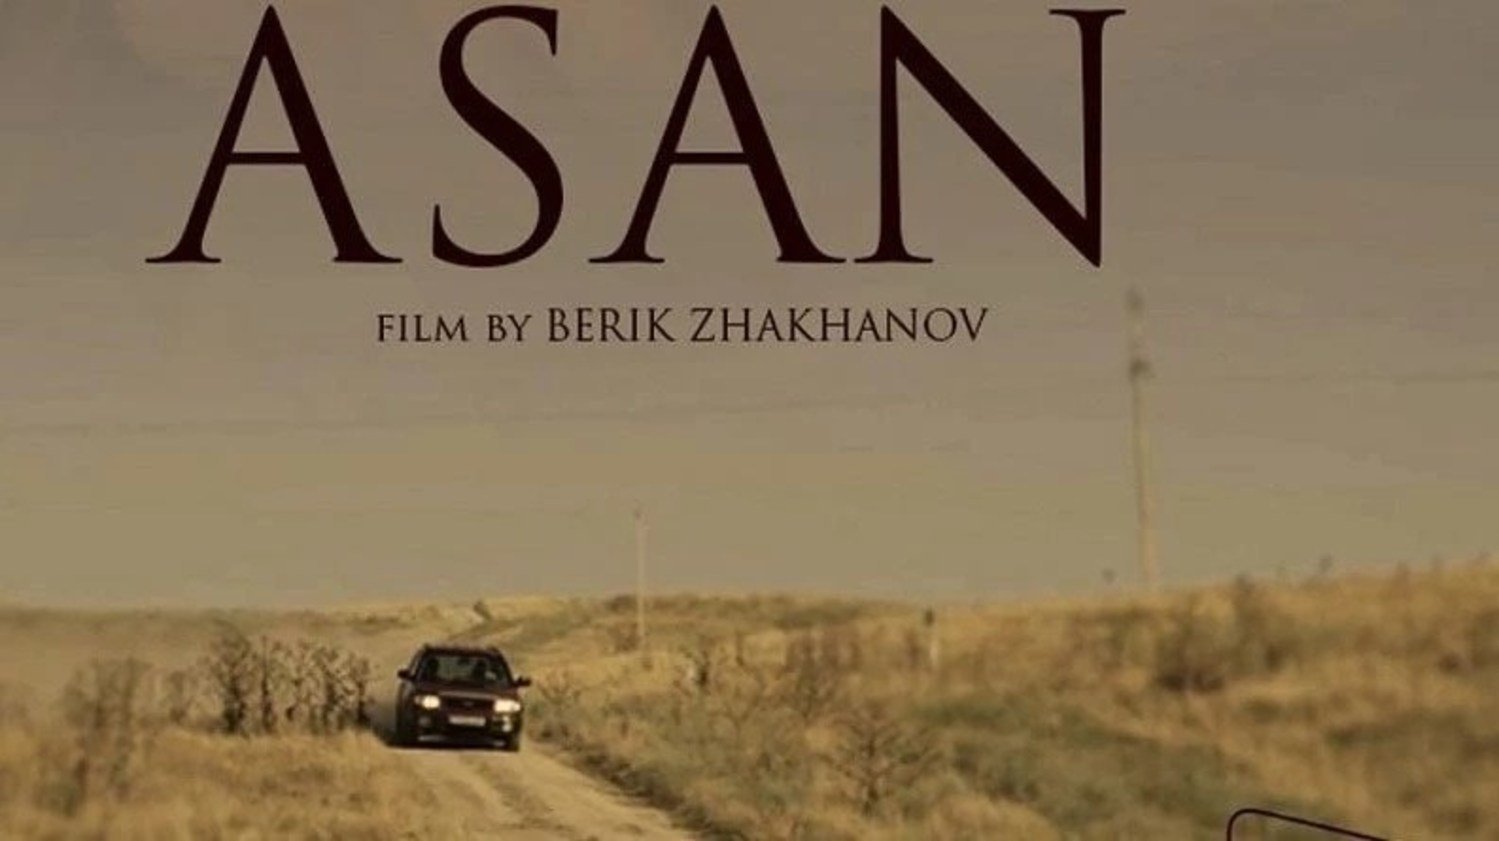 Казахстанский фильм попал в конкурсную программу кинофестиваля в Казани